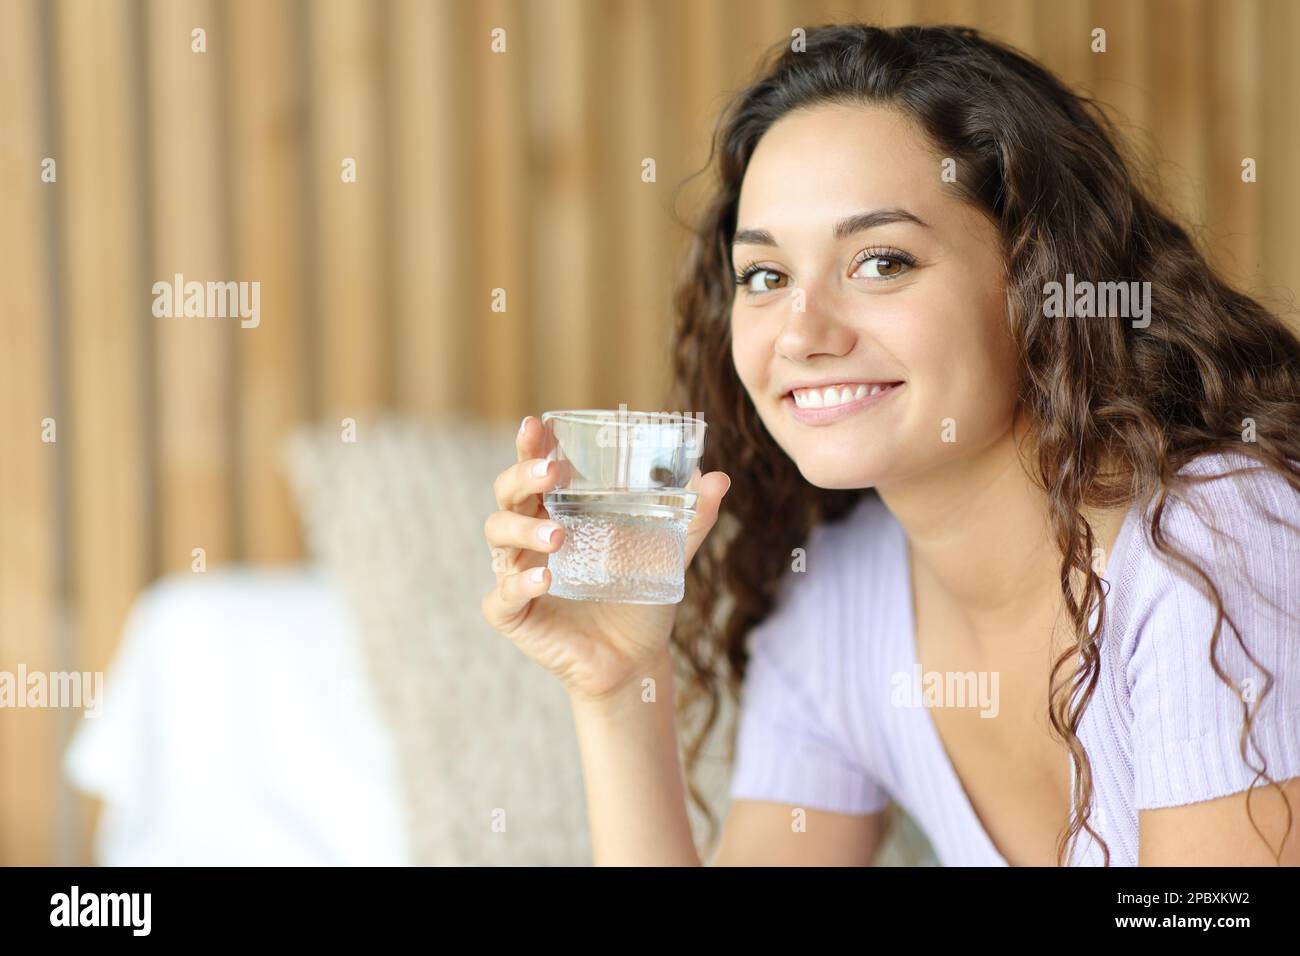 Une femme heureuse tenant un verre d'eau vous regarde assis sur un lit Banque D'Images